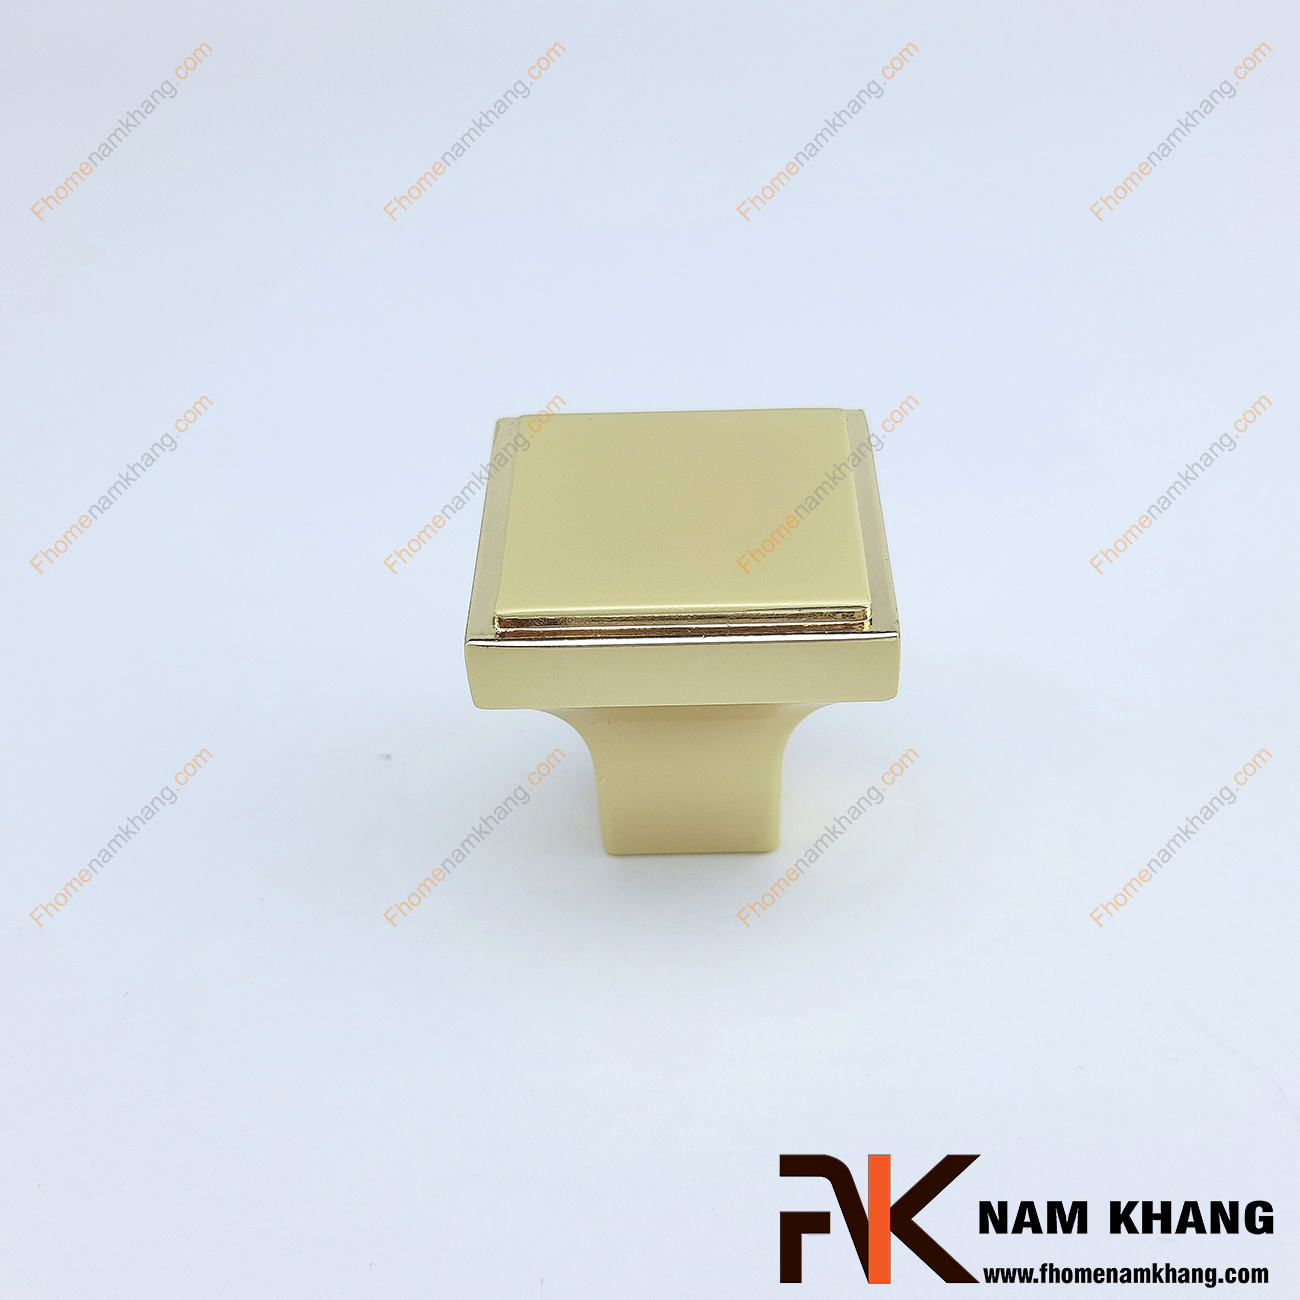 Chất liệu và vẻ ngoài là 2 tiêu chí hàng đầu khi lựa chọn sản phẩm nội thất. Núm cửa tủ vuông màu vàng viền ánh kim NK026-VK được thiết kế tinh tế dạng khối vuông từ hợp kim và được mạ màu đặc trưng để tạo nên vẻ đẹp đặc trưng của một sản phẩm nội thất.